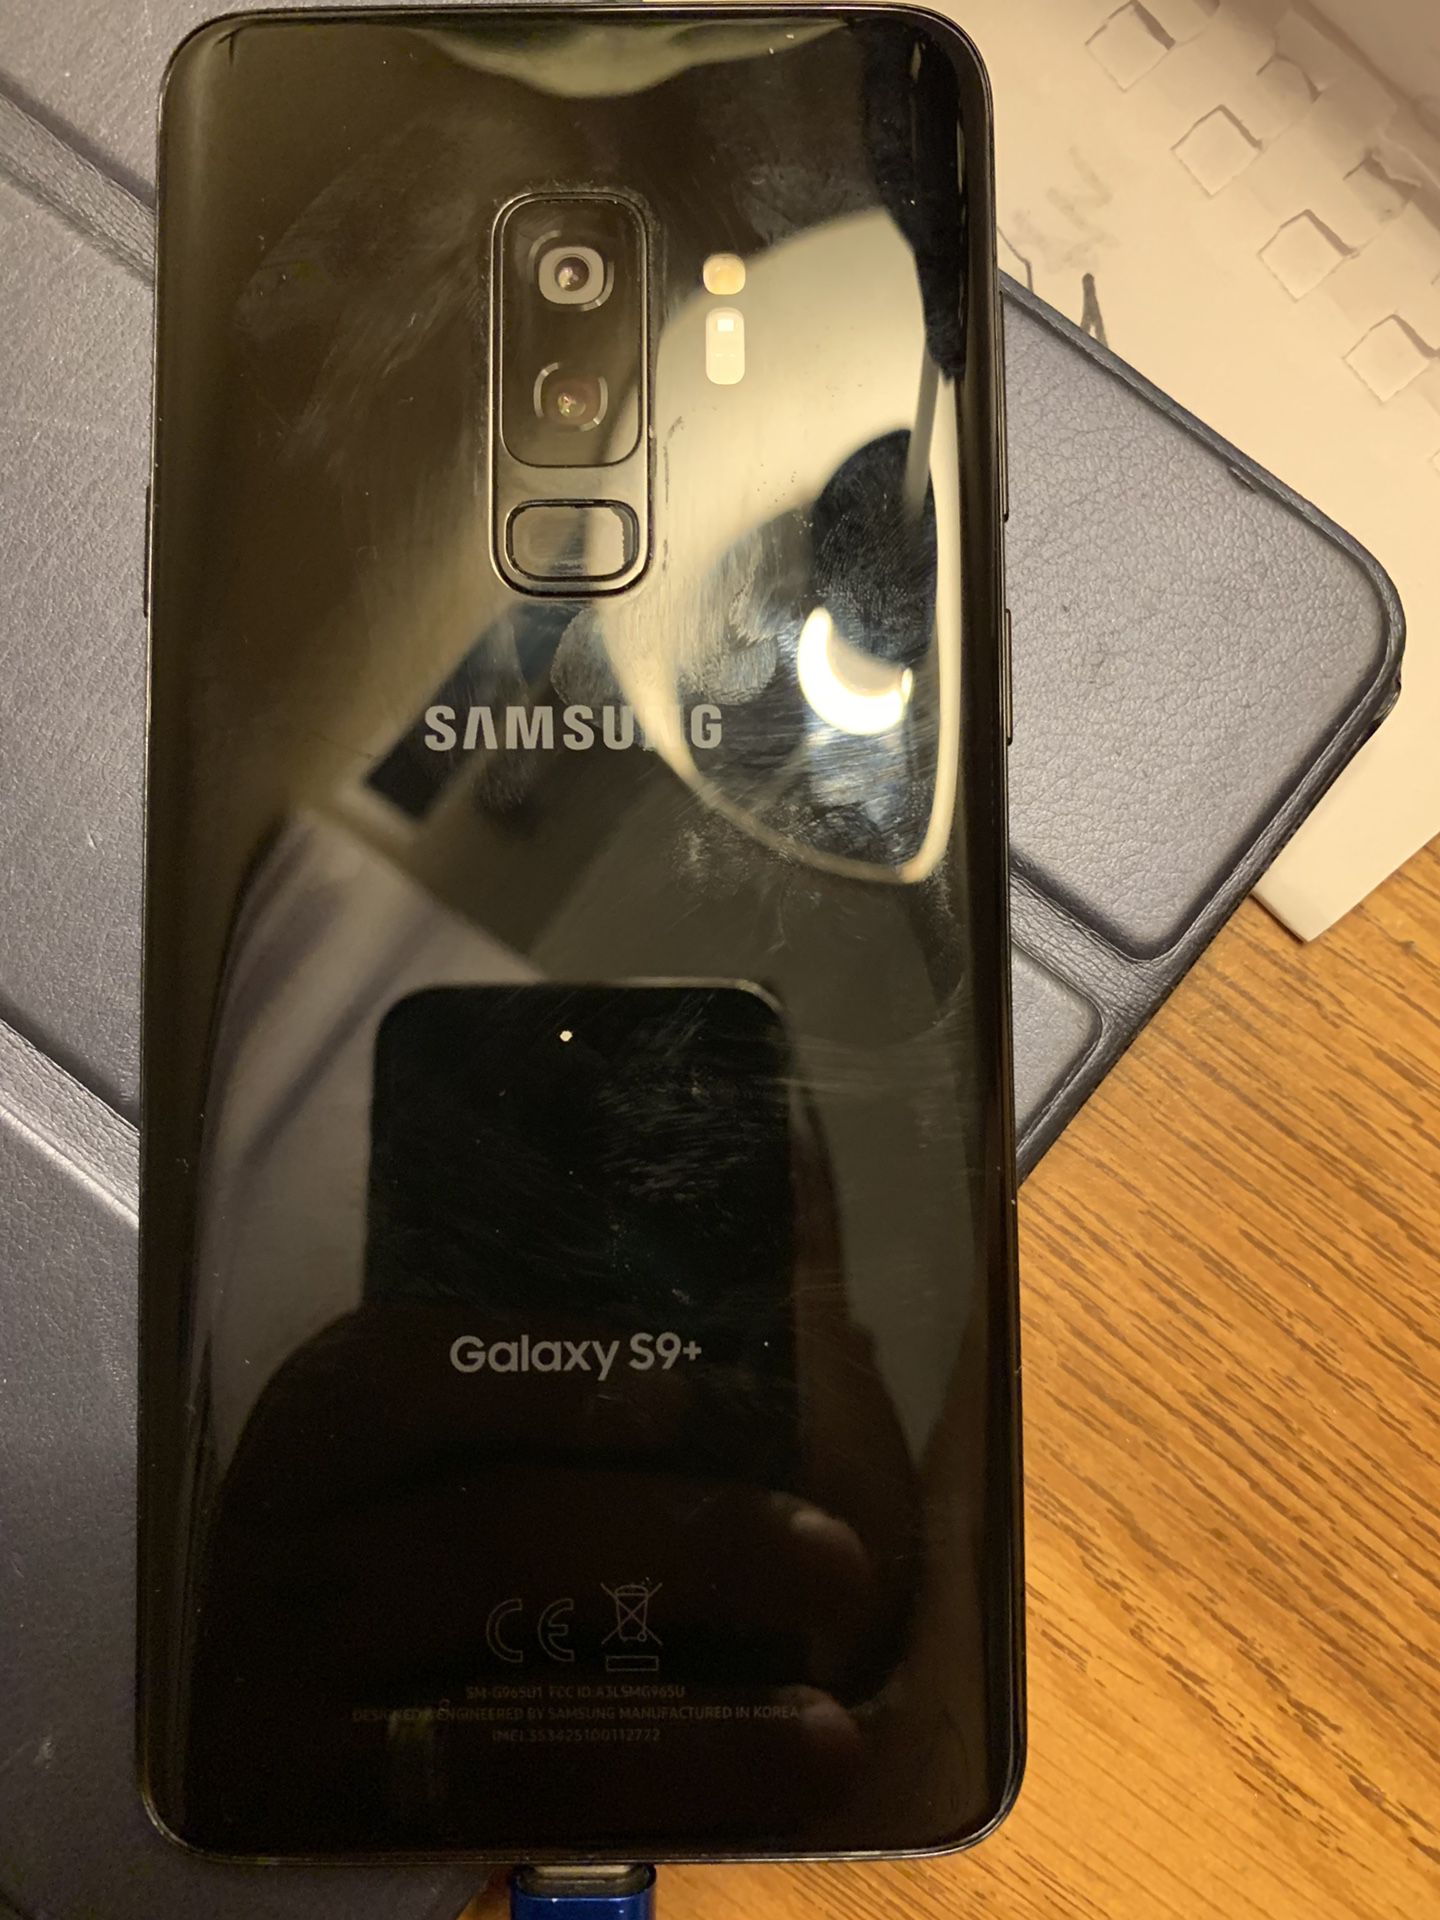 Samsung Galaxy s9+ unlocked